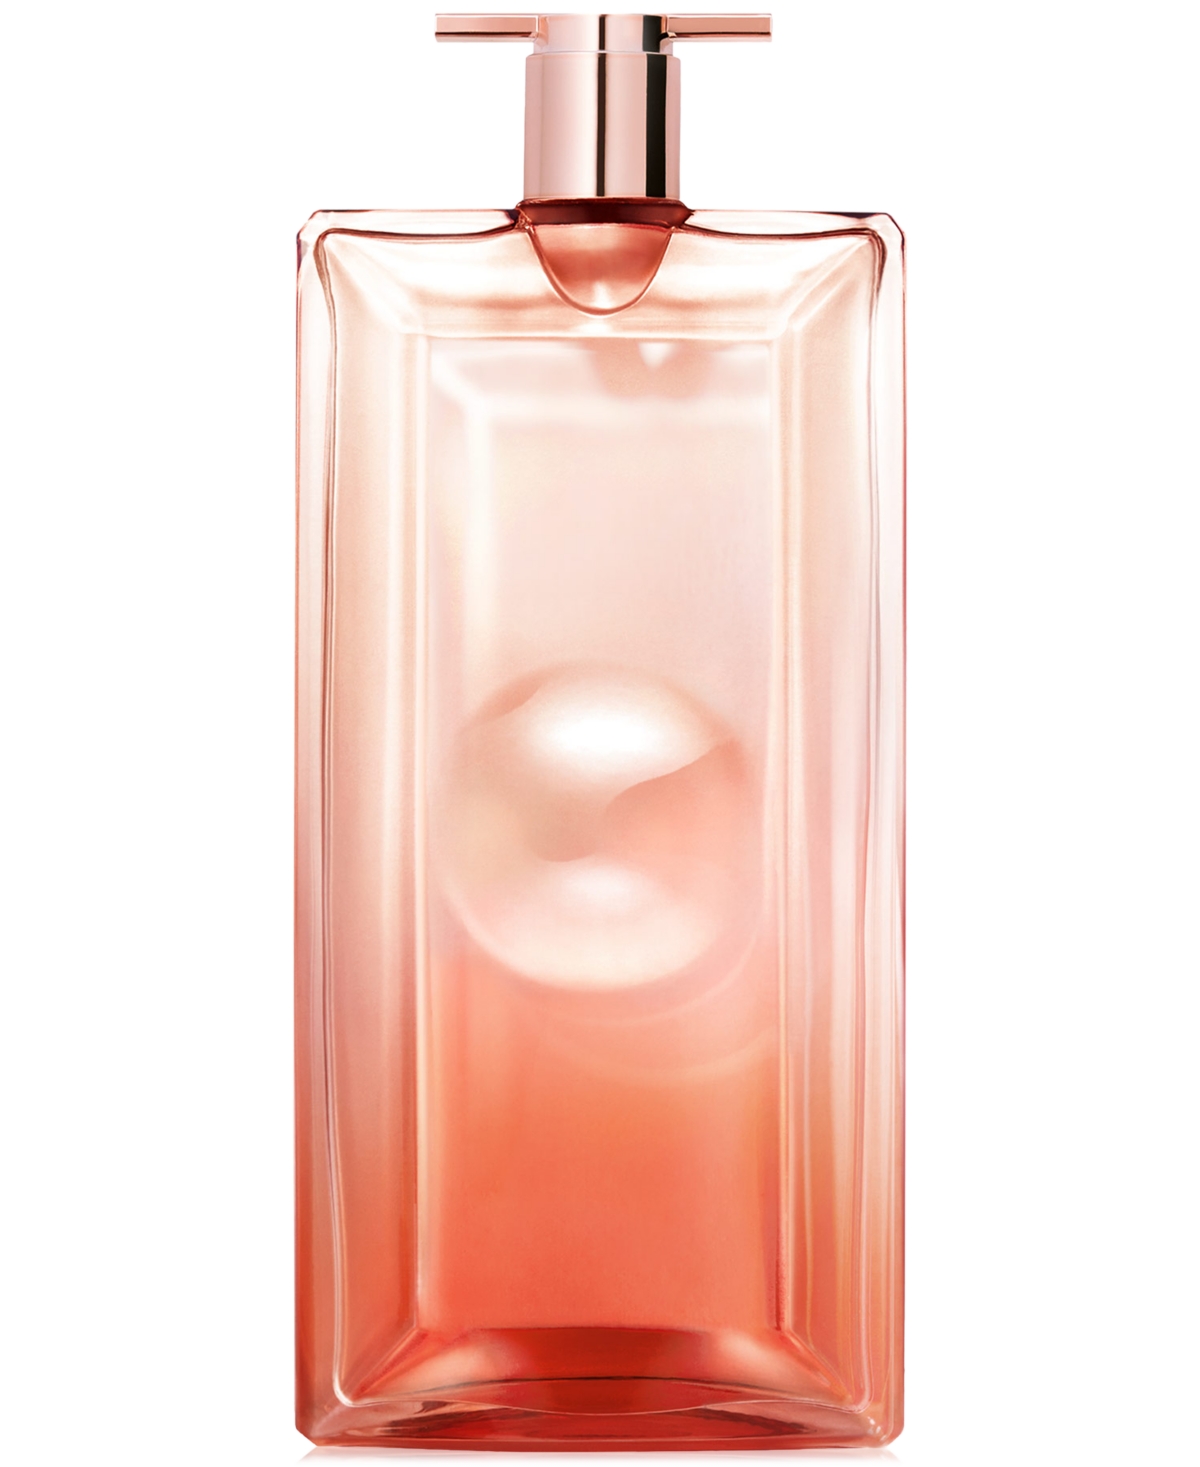 Lancôme Idole Now Eau De Parfum, 3.4 oz